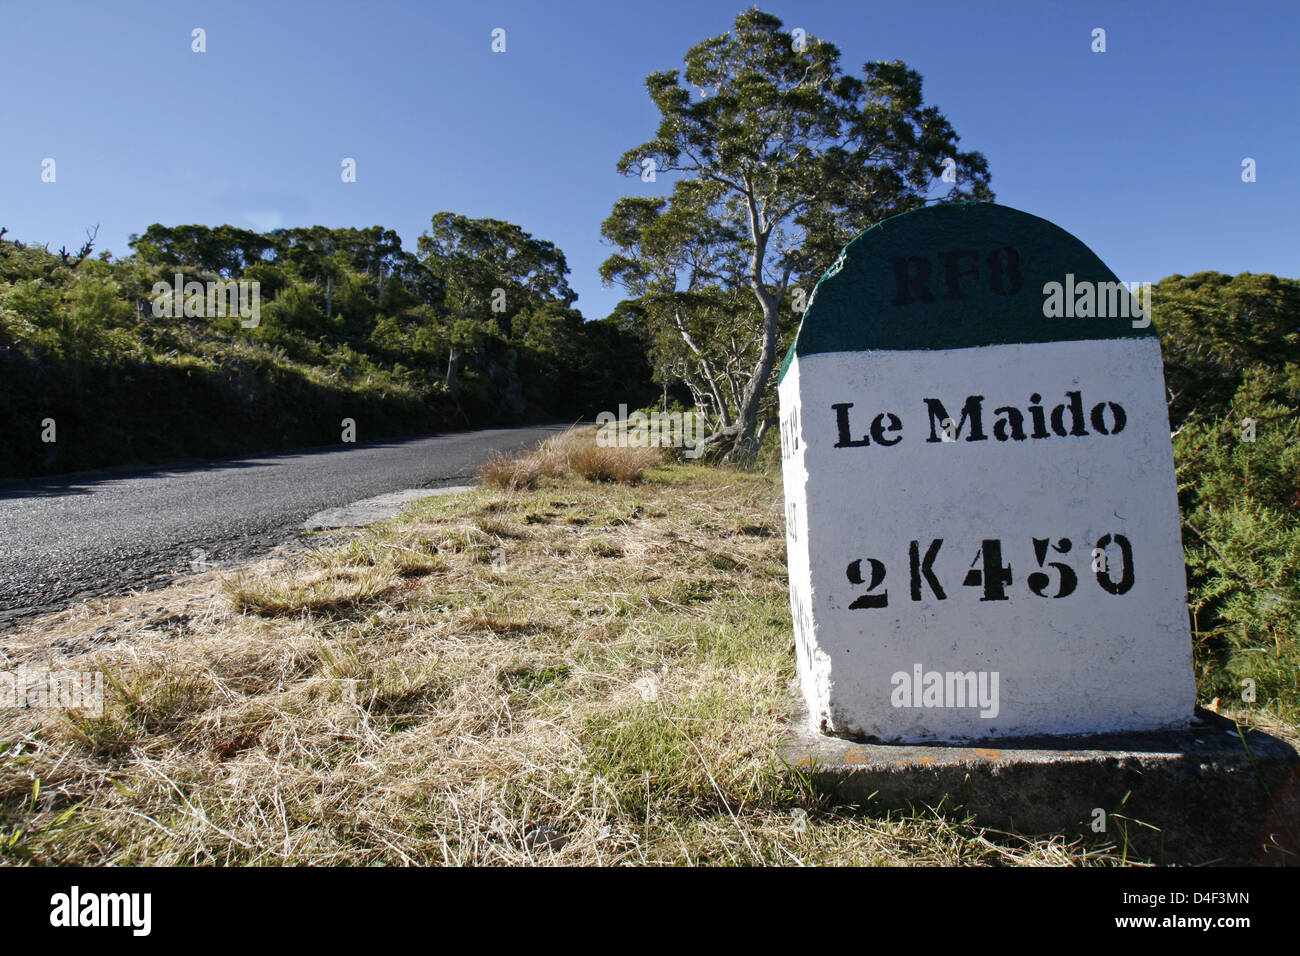 Une marque sur la photo de pierre sur la route de Piton Maido sur la Réunion, France, 14 avril 2008. Photo : Lars Halbauer Banque D'Images